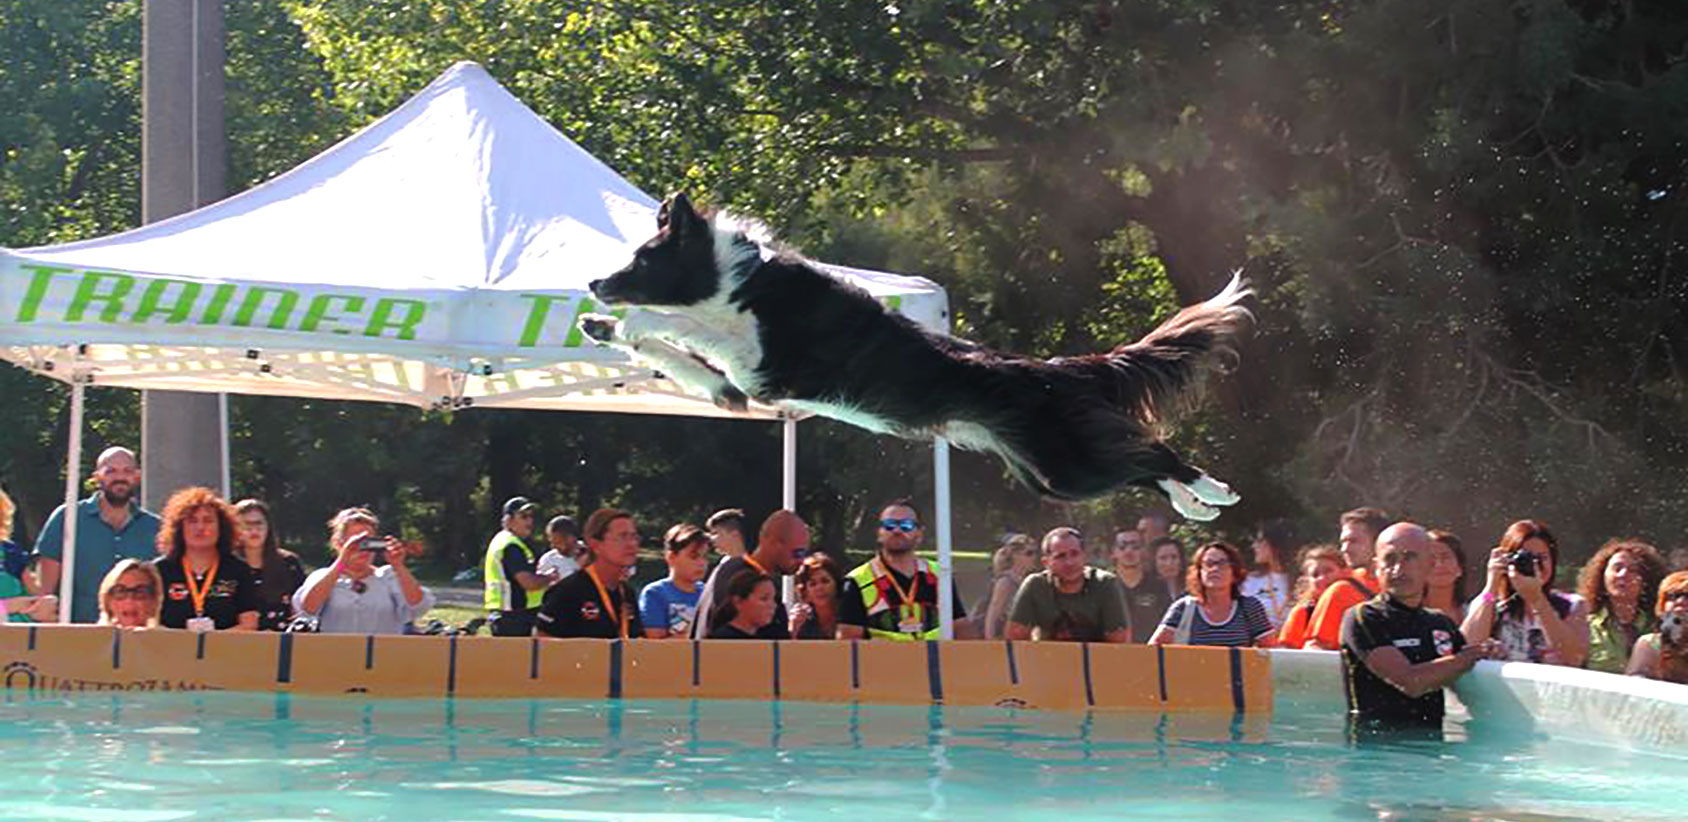 splash dog sics